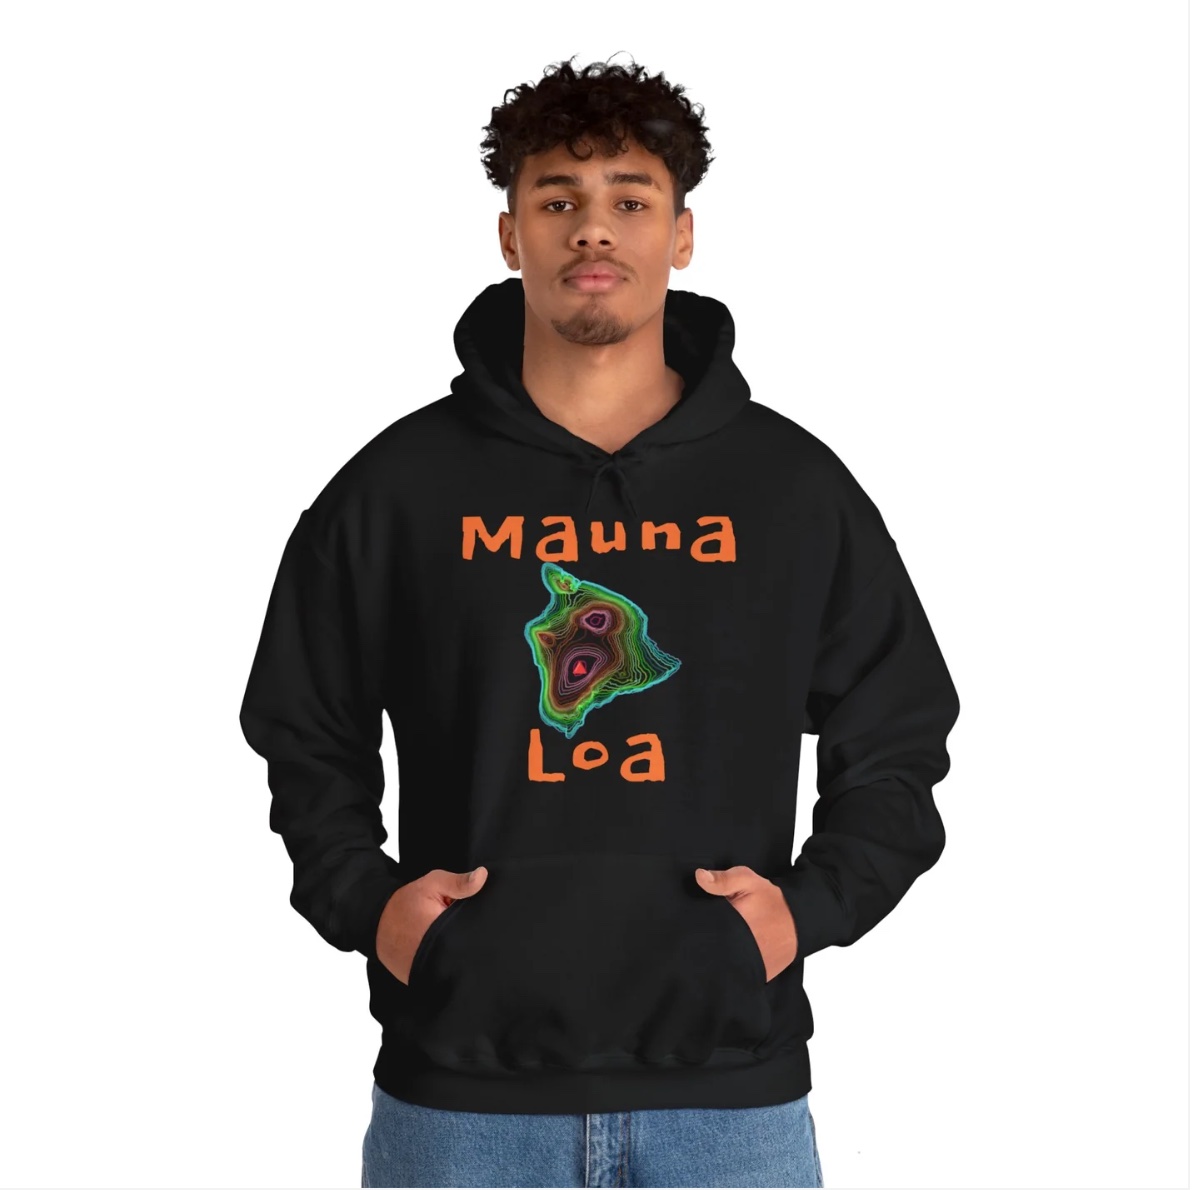 Mauna Loa hoodie